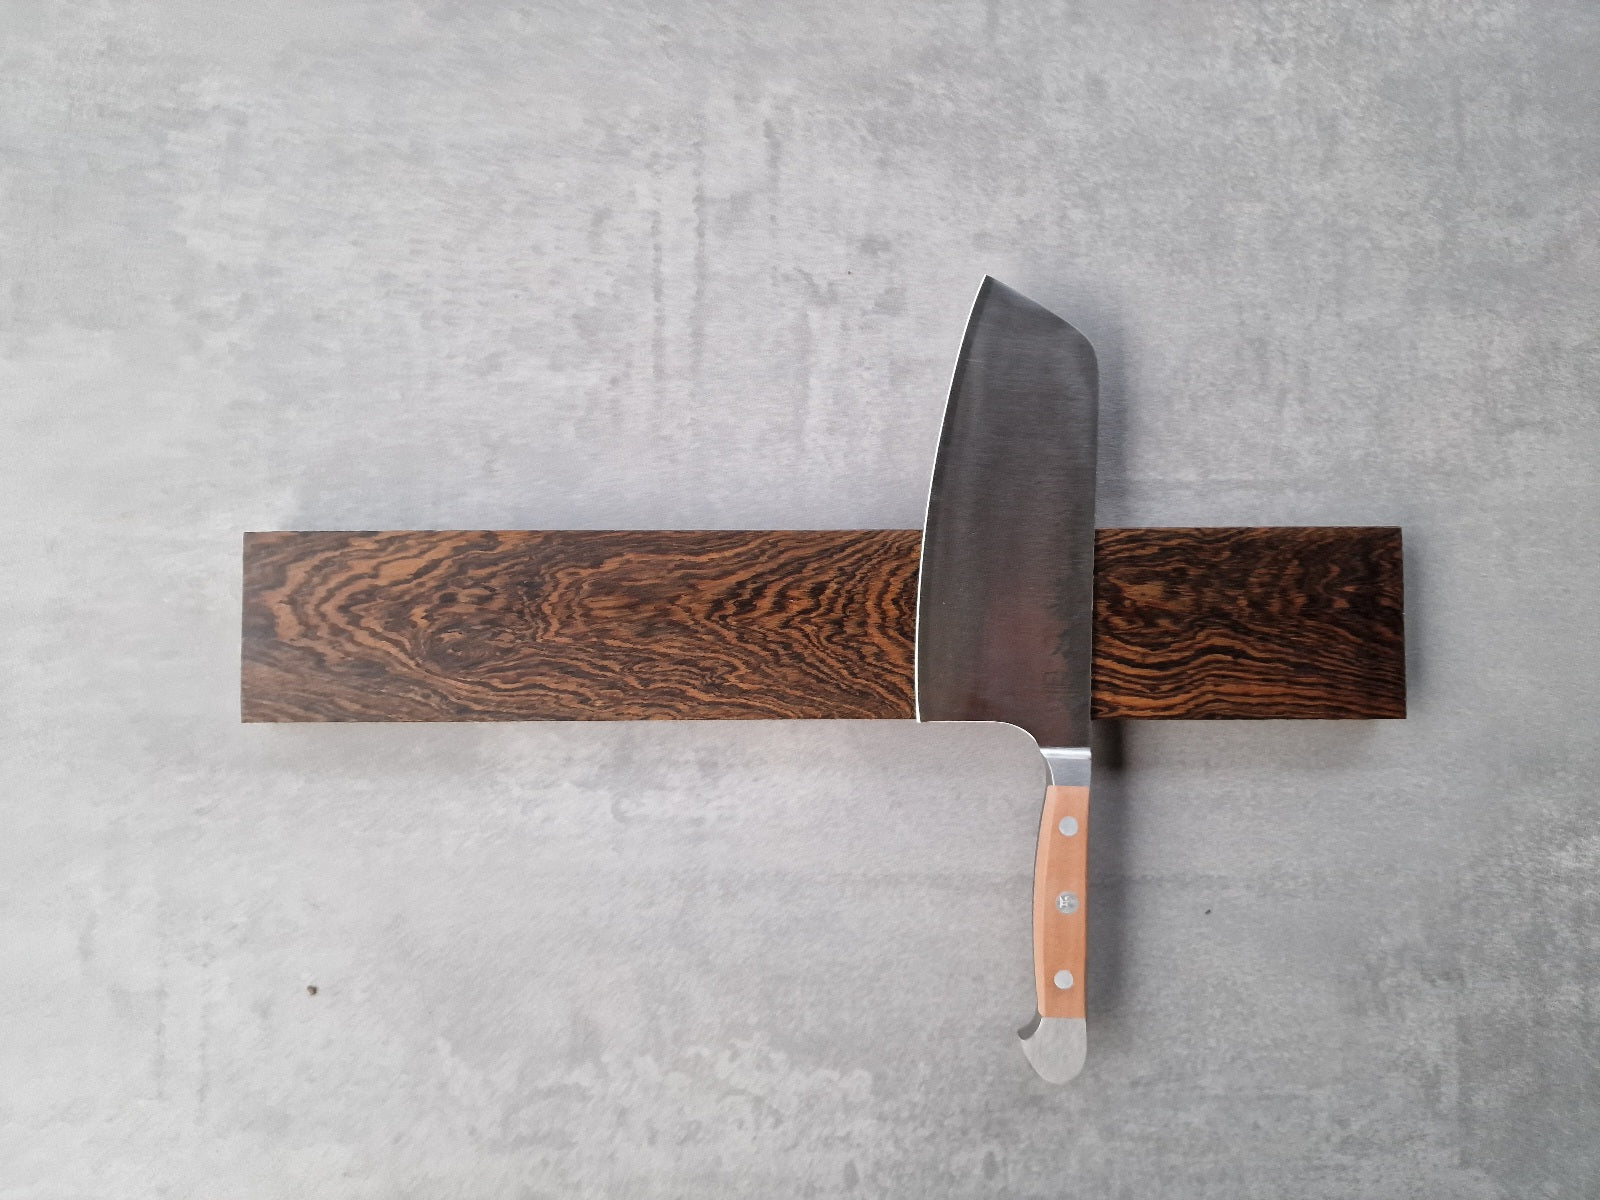 Magnetischer Wandhalter für Messer aus Bocote. Montiert an einer Wand mit einem Güde Koch Messer